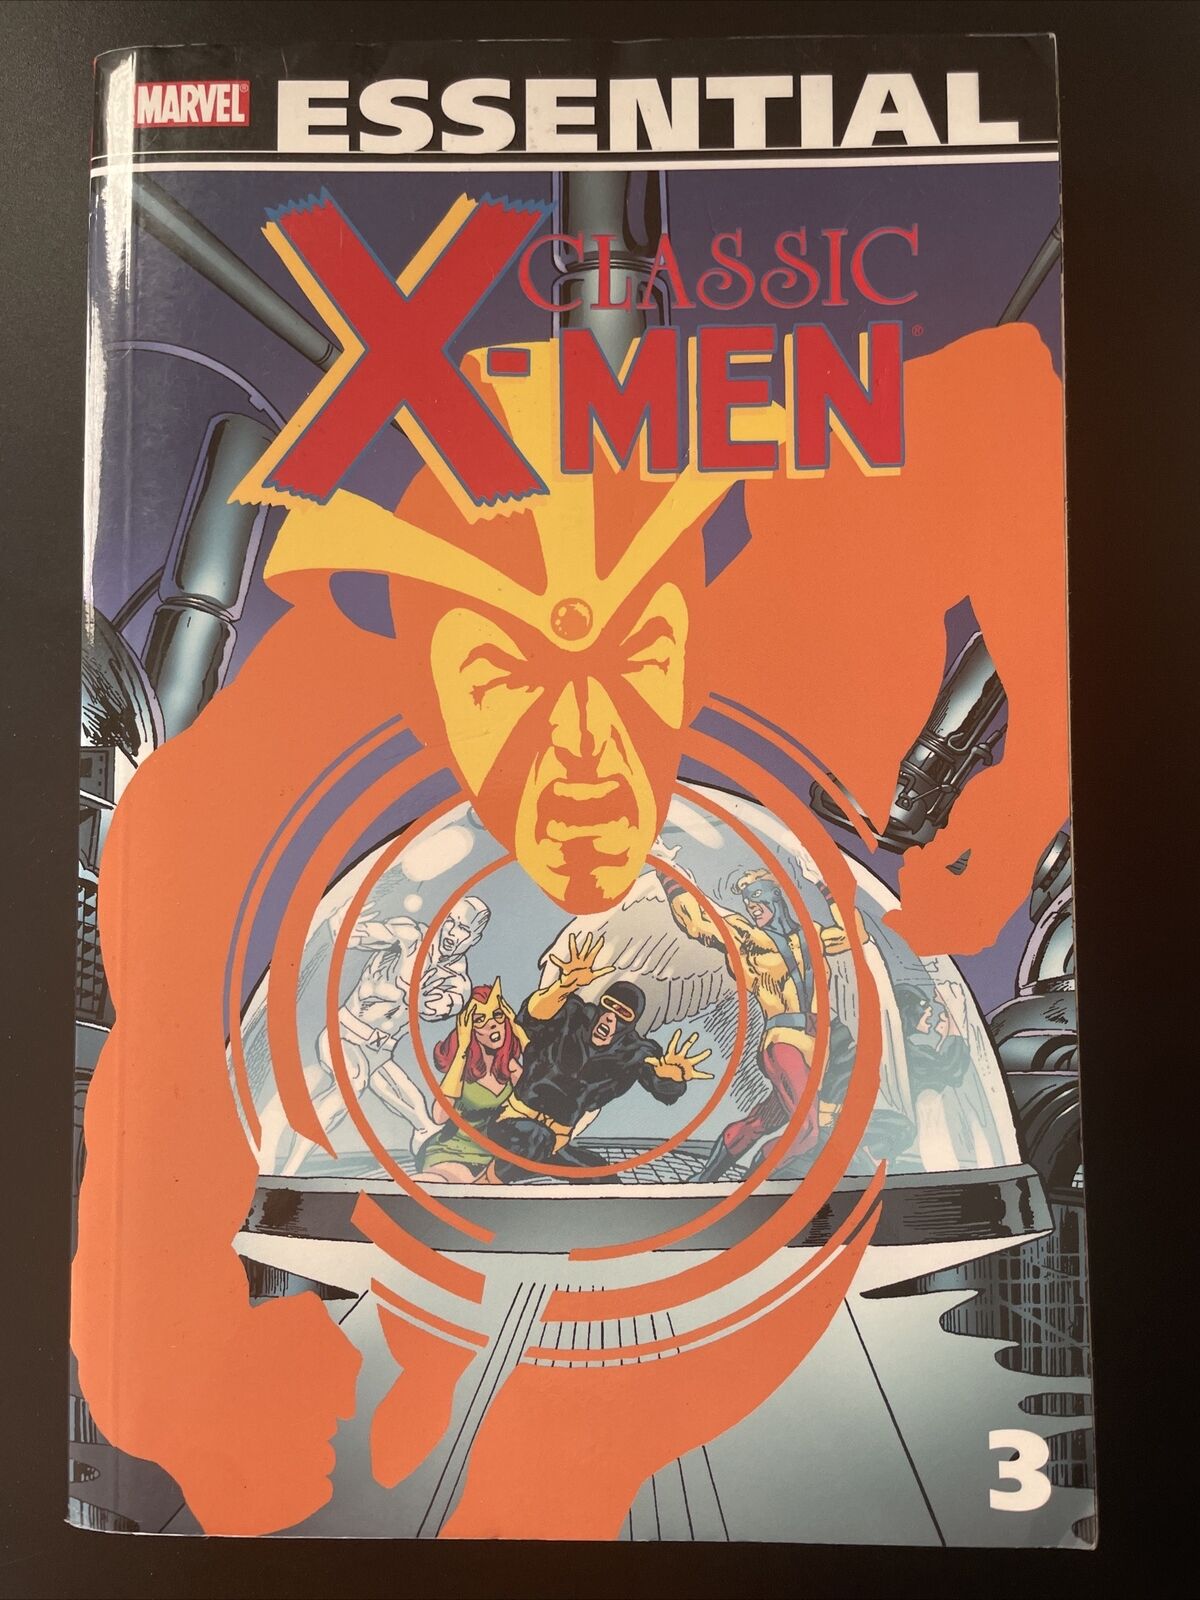 Essential Classic X-Men #3 (Marvel, 2009)